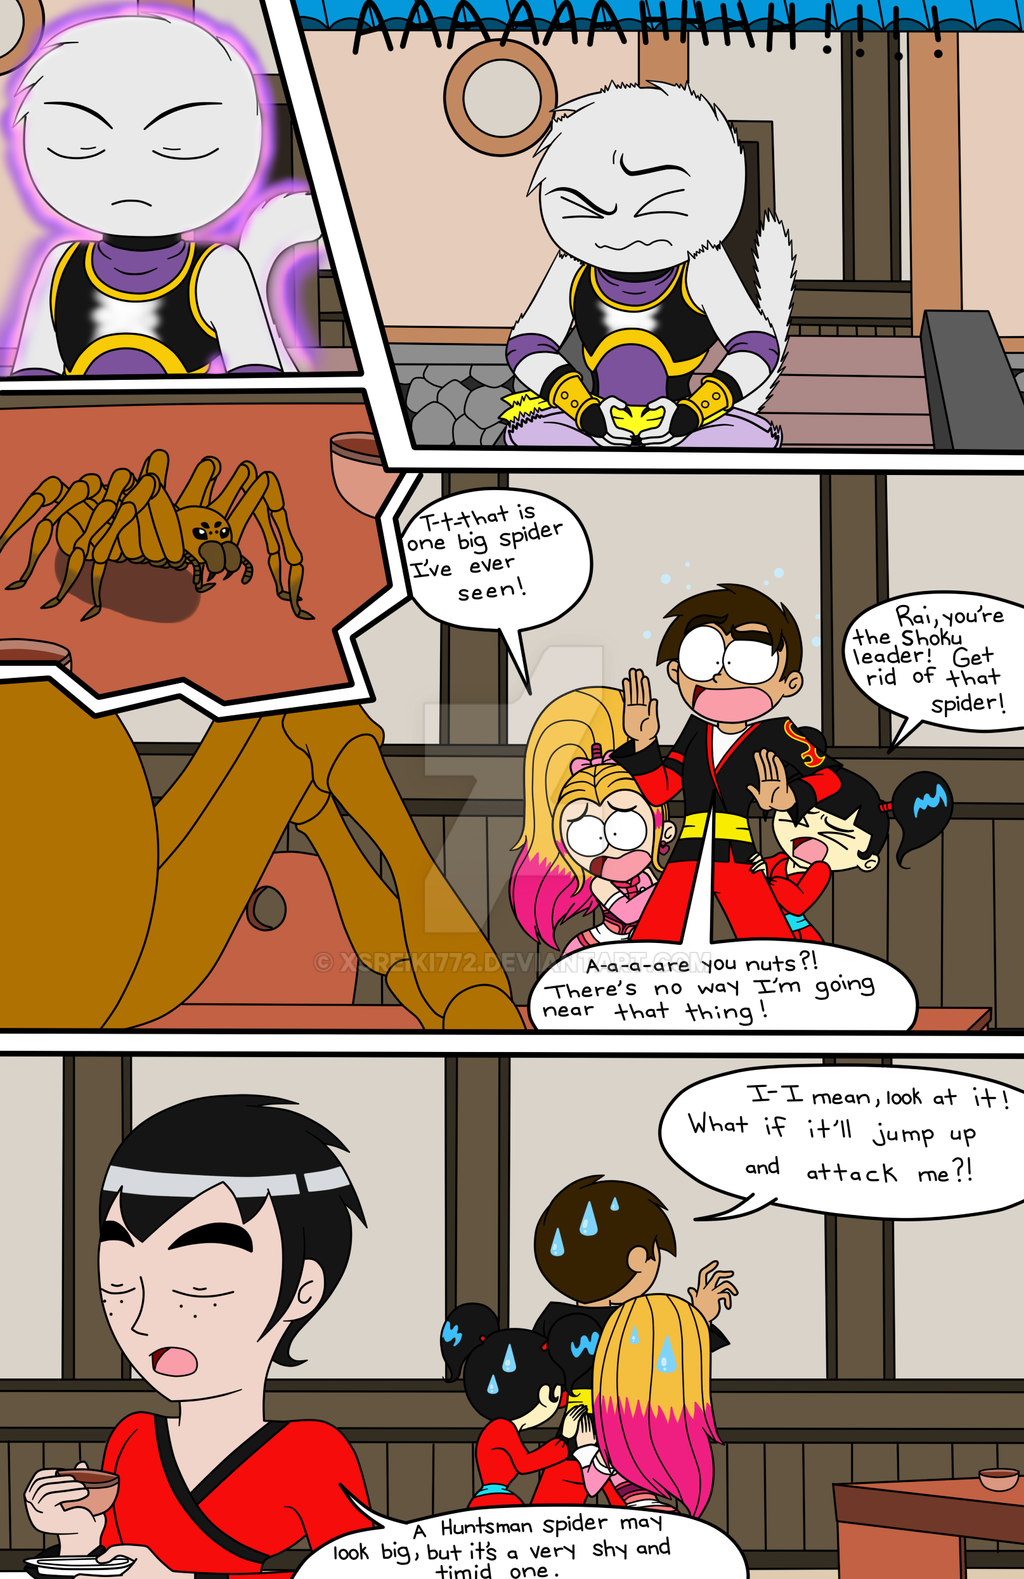 XS comic: Spider! part 1 by XSreiki772 on DeviantArt